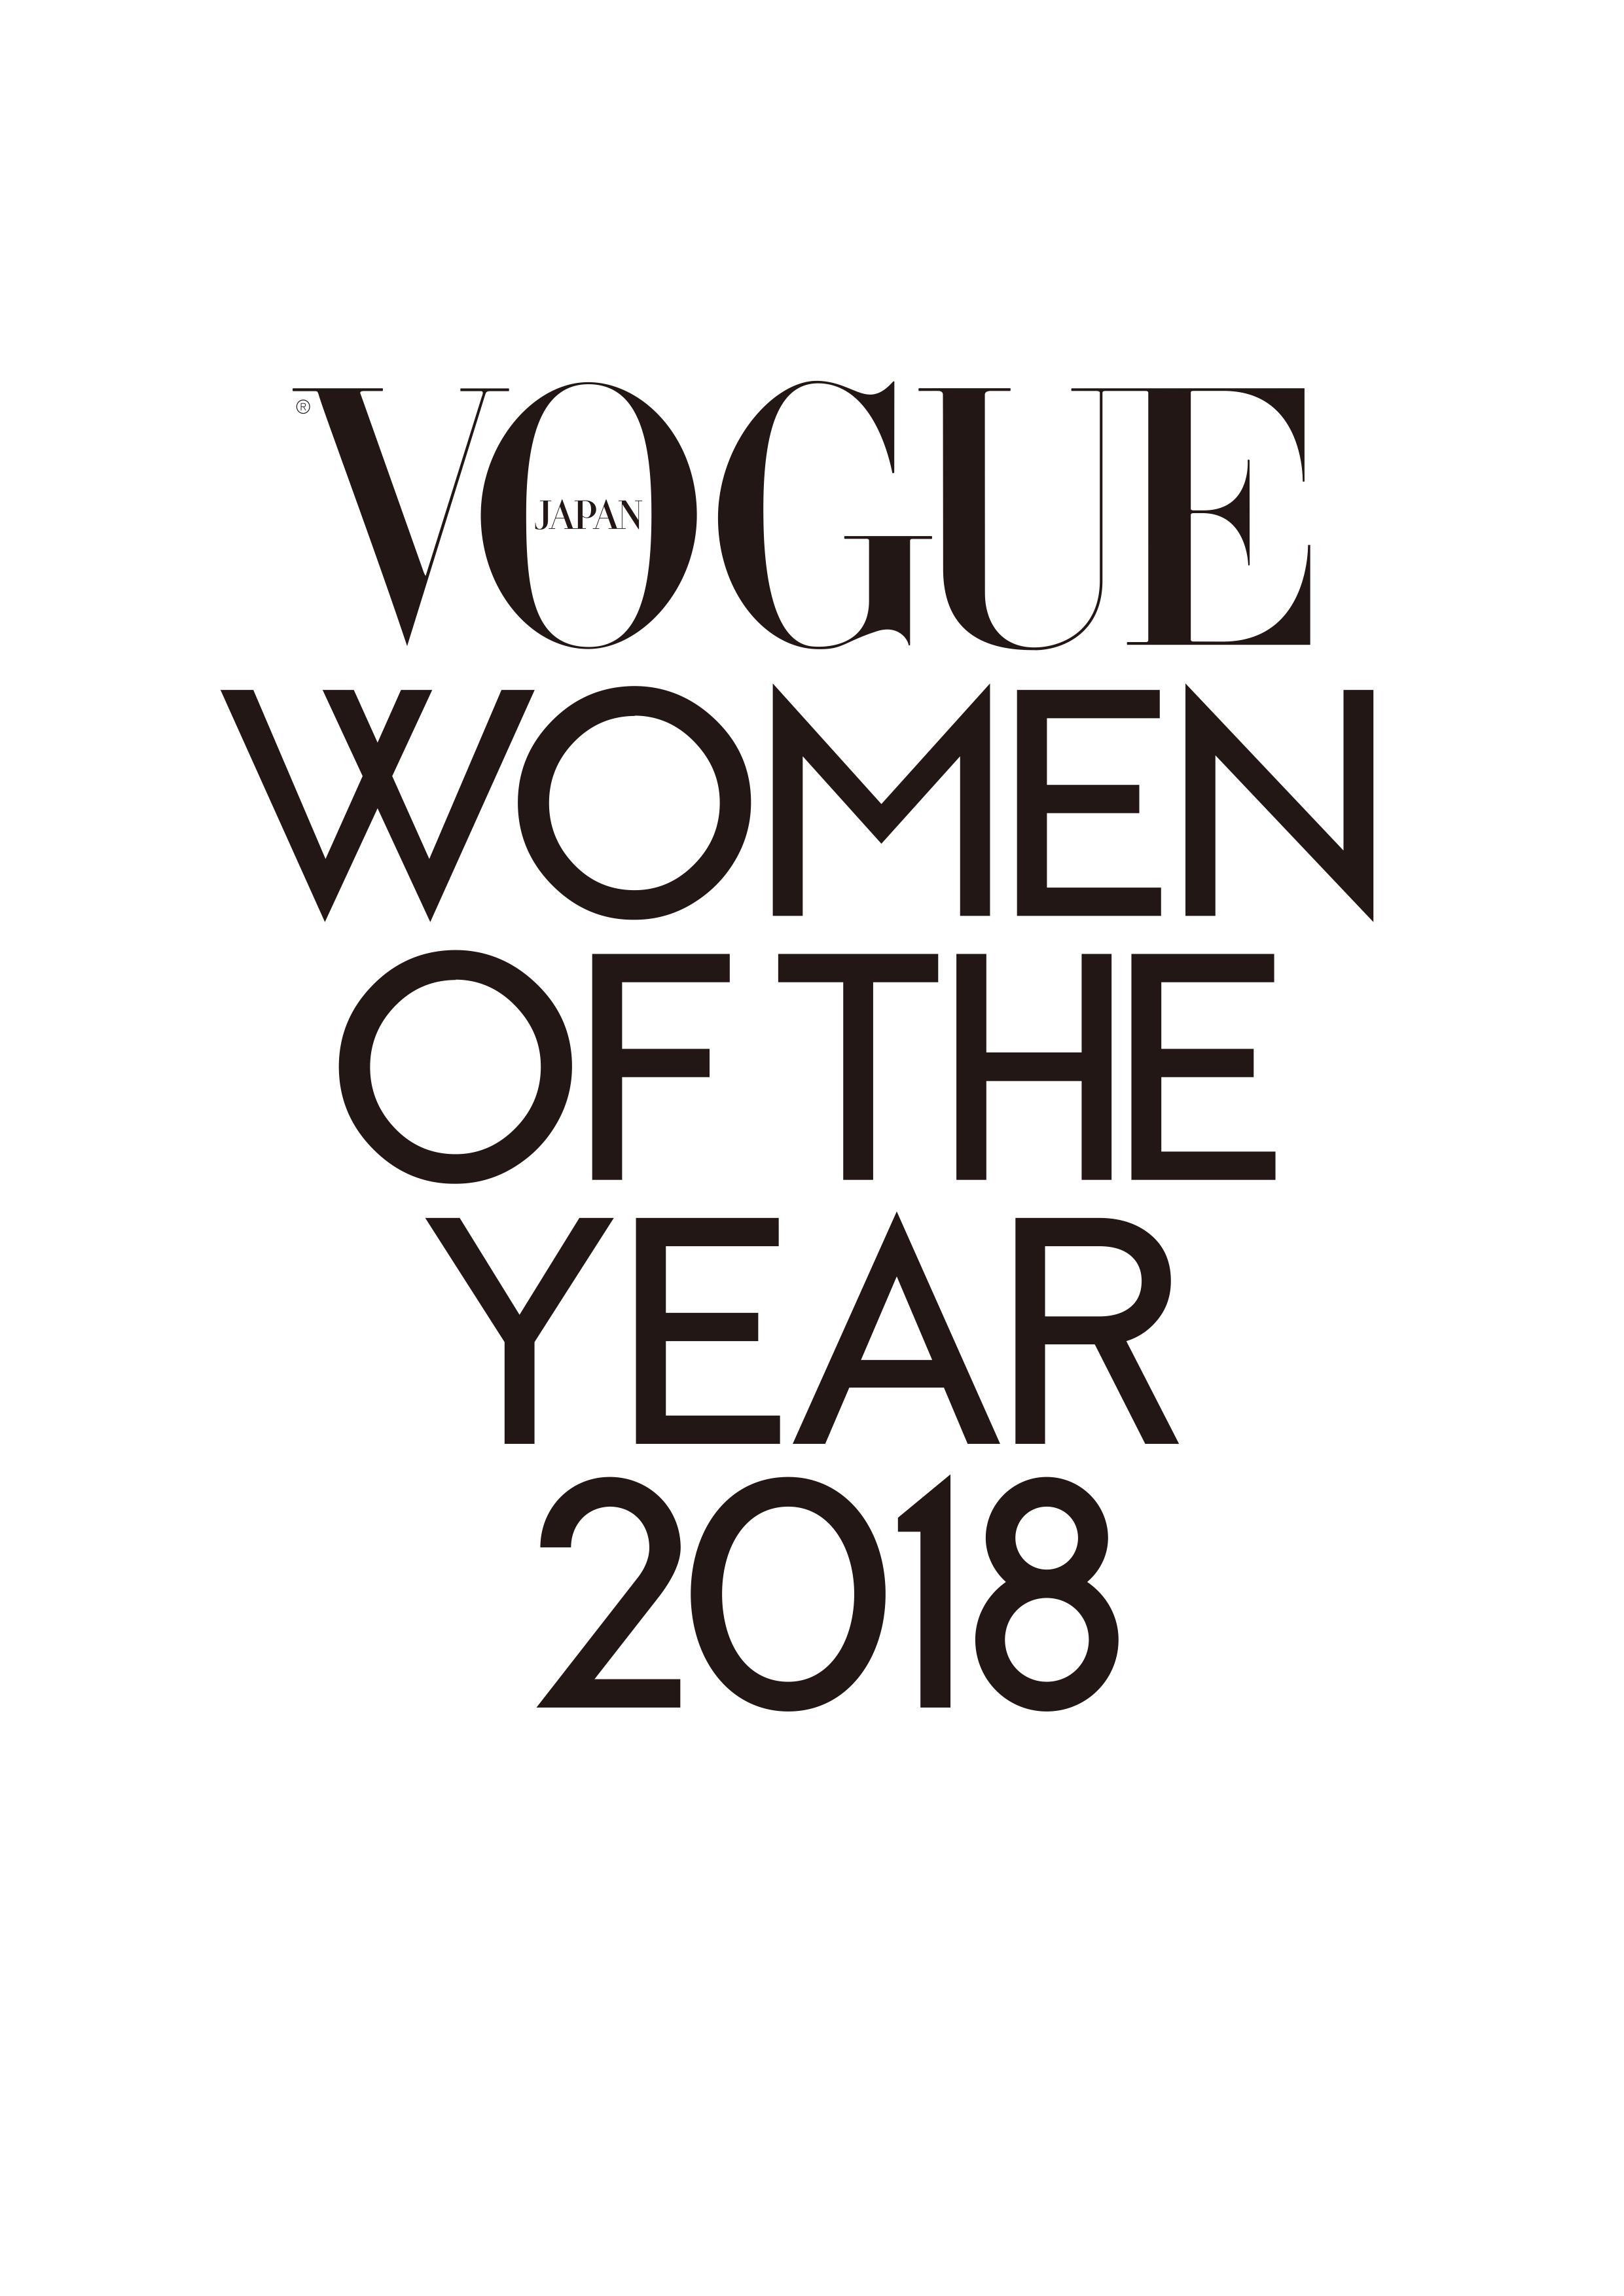 今年最も輝いた女性たちが一堂に集う Vogue Japan Women Of The Year 2018 受賞者発表は11月26日 に決定 コンデナスト ジャパンのプレスリリース